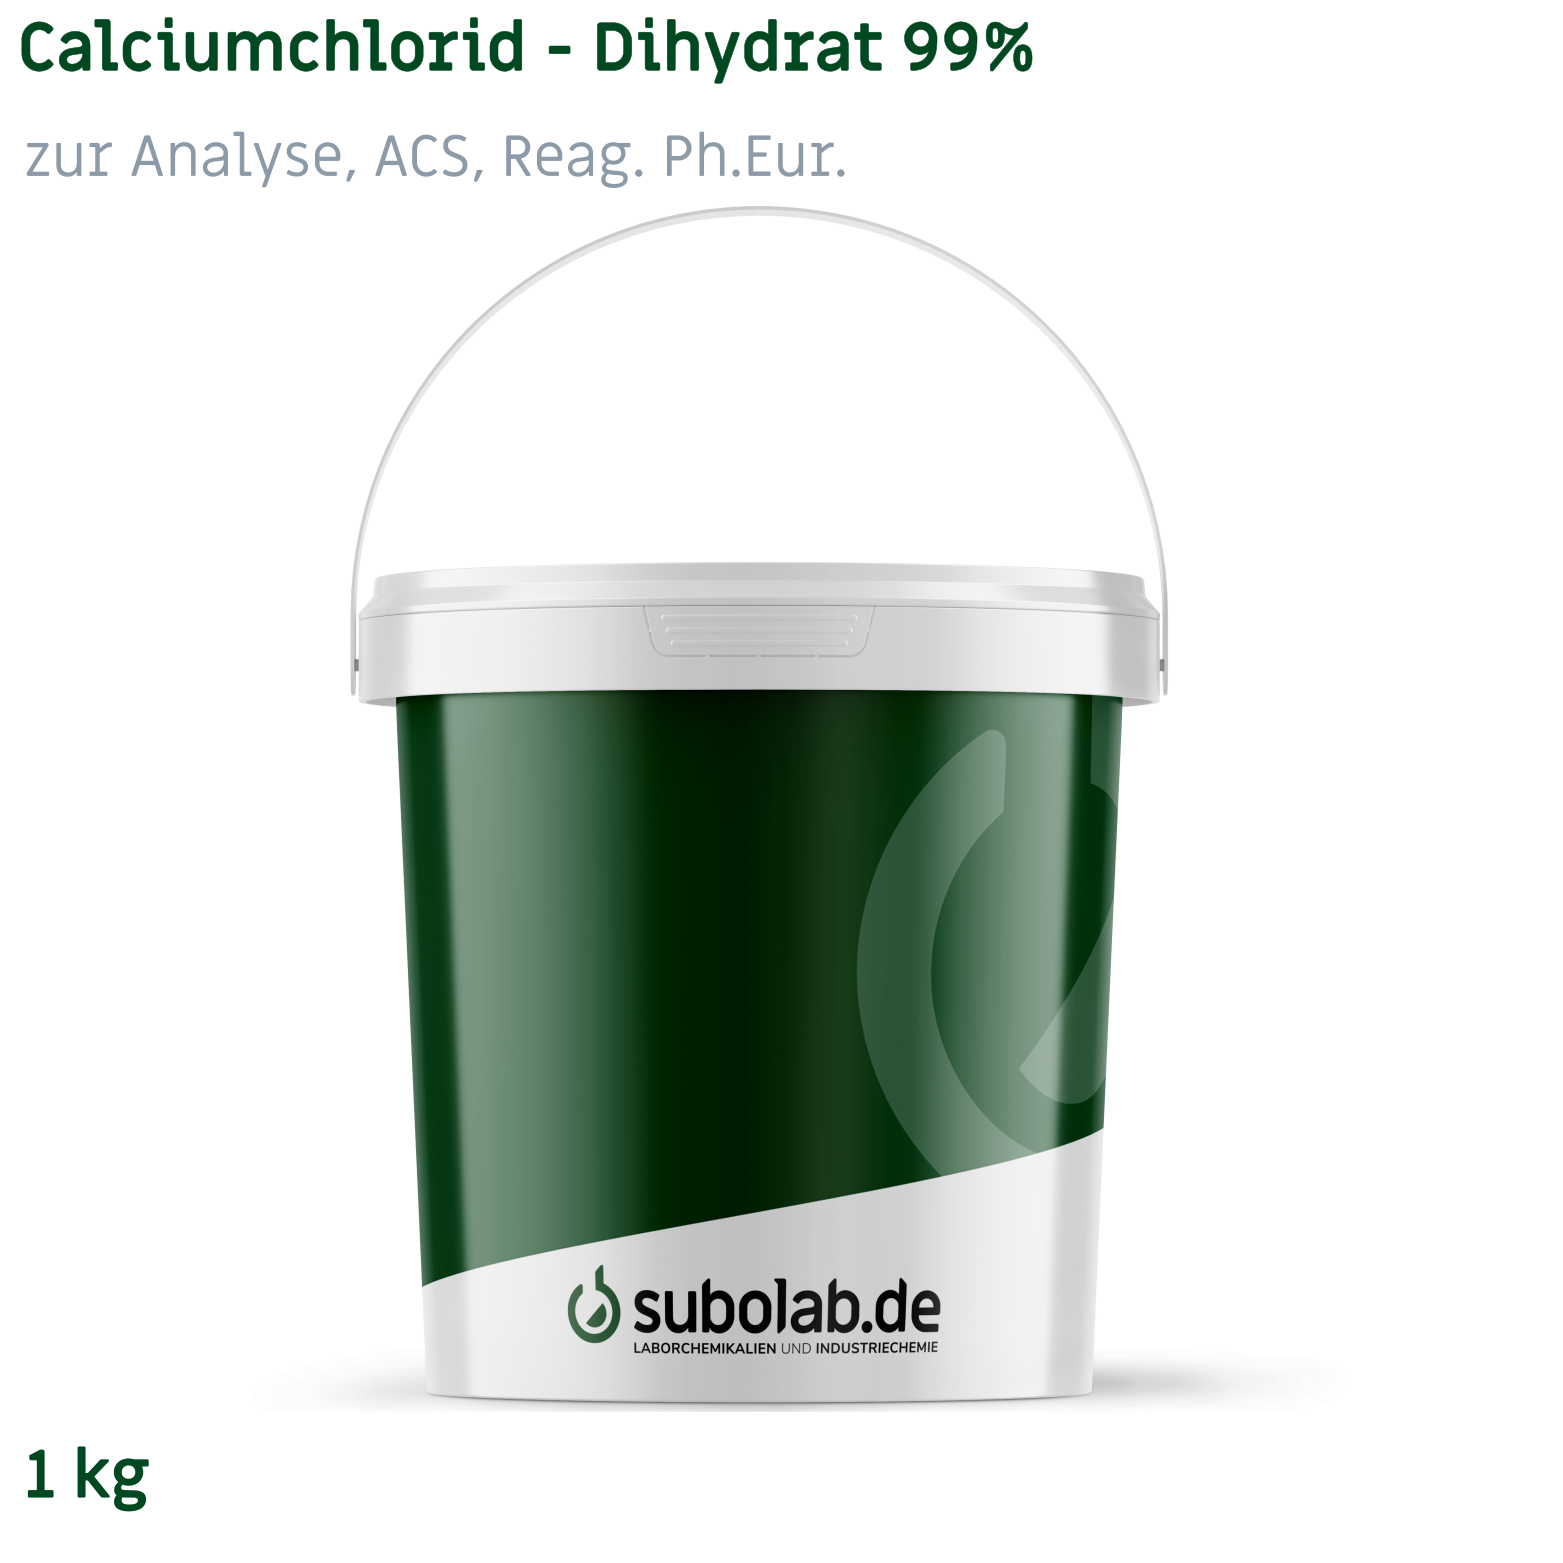 Bild von Calciumchlorid - Dihydrat 99% zur Analyse, ACS, Reag. Ph.Eur. (1 kg)